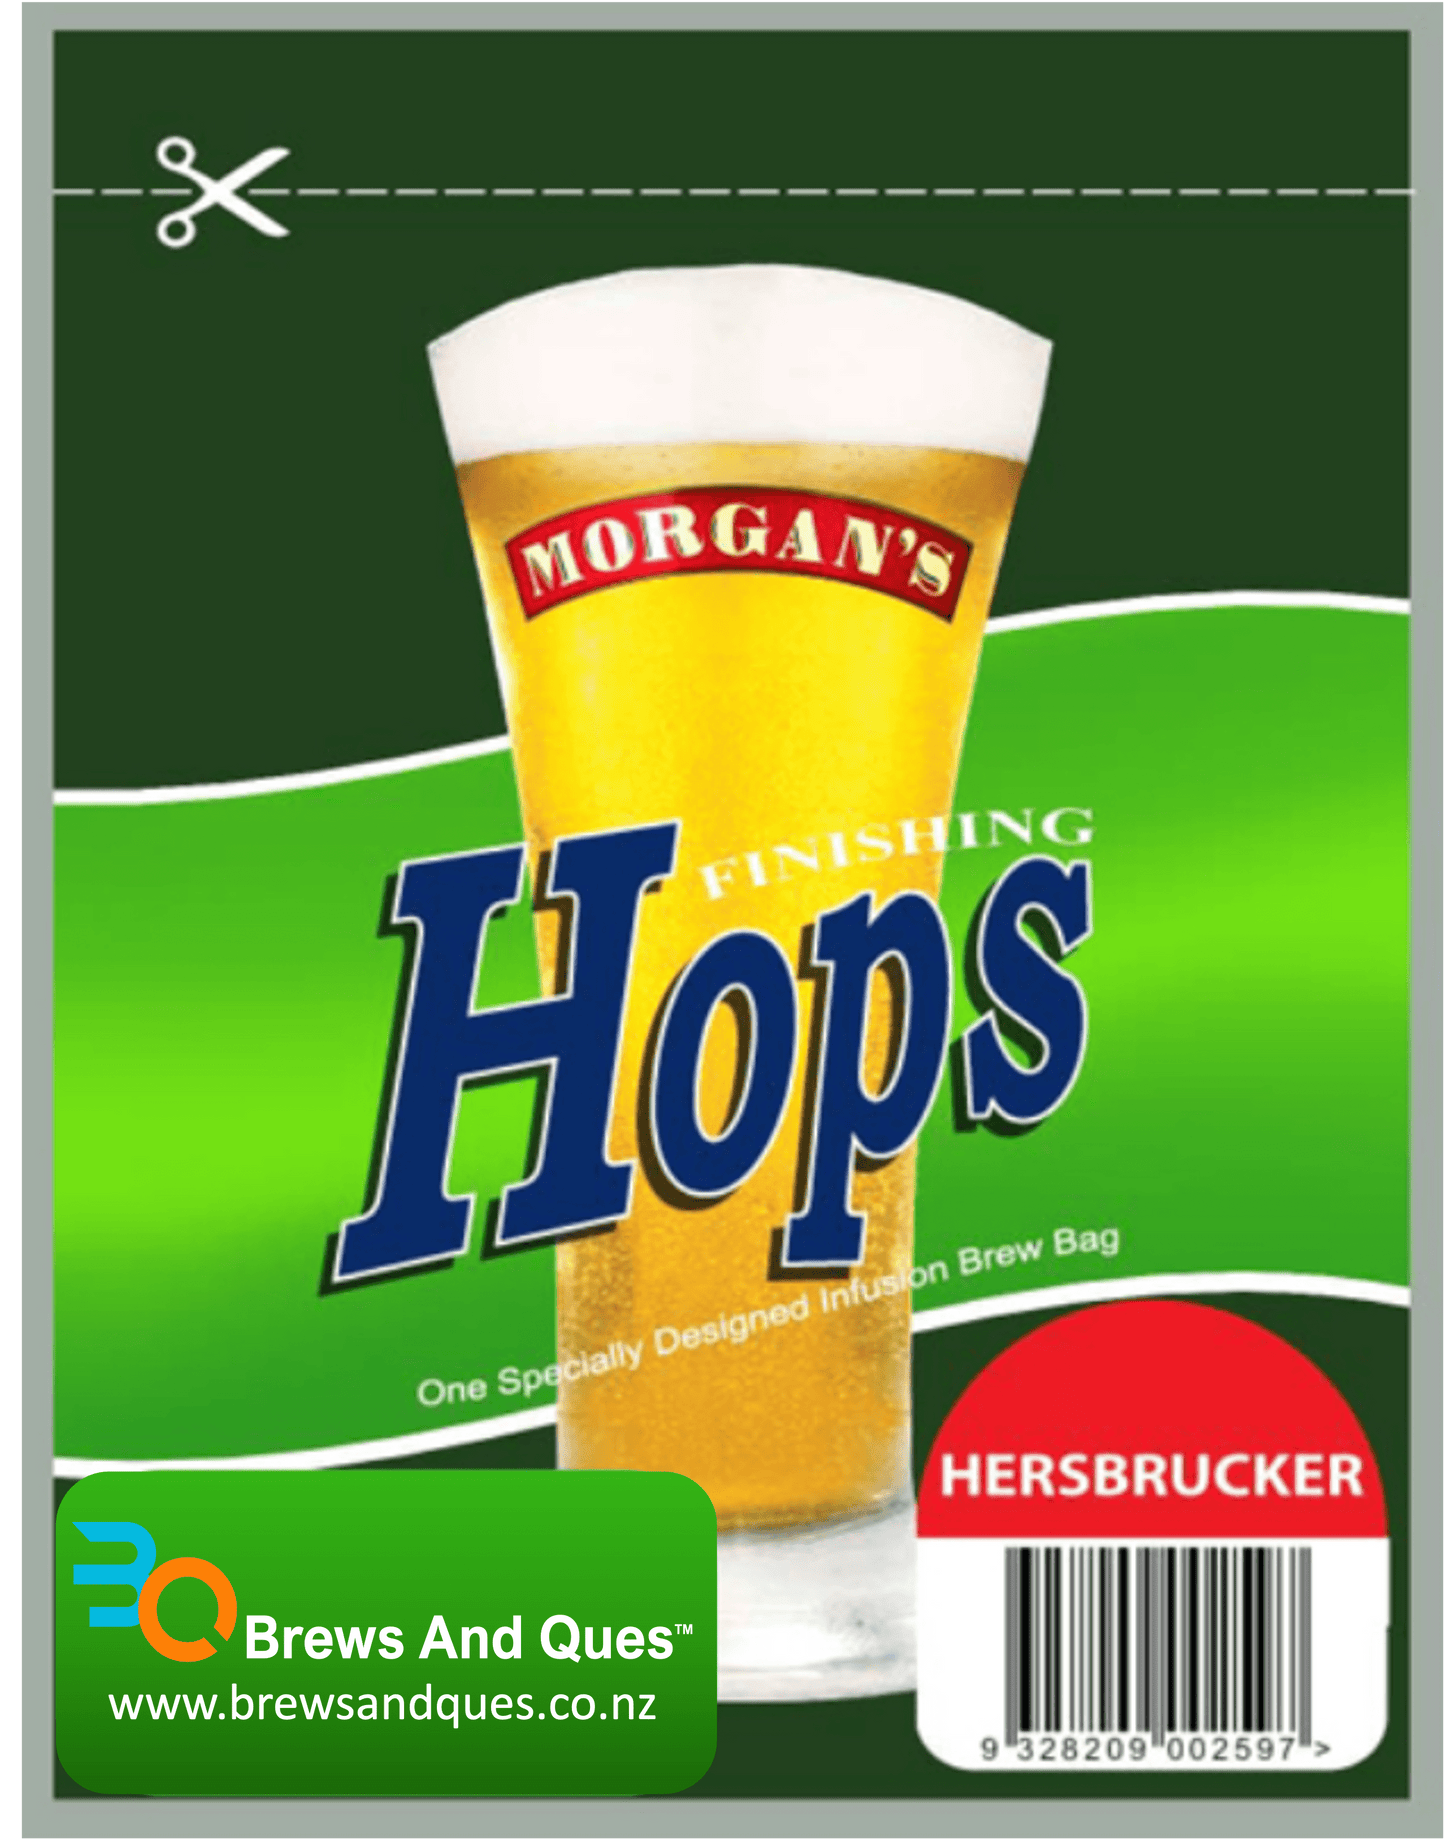 Morgans Finishing Hops - Hersbrucker